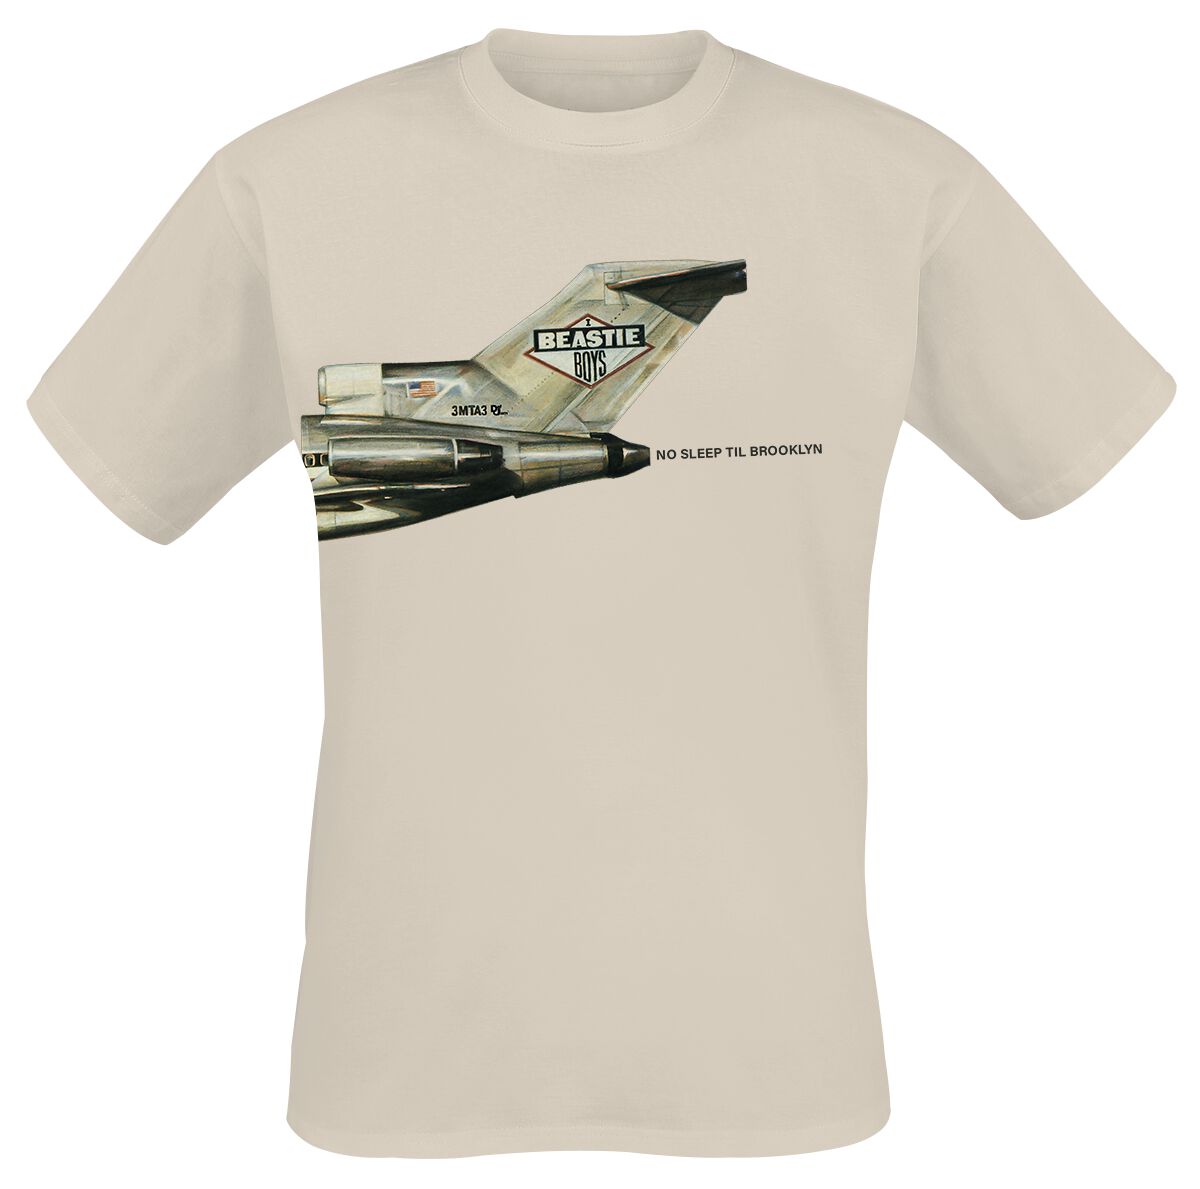 Beastie Boys T-Shirt - No Sleep Til Brooklyn Plane - S bis 3XL - für Männer - Größe S - sand  - Lizenziertes Merchandise!